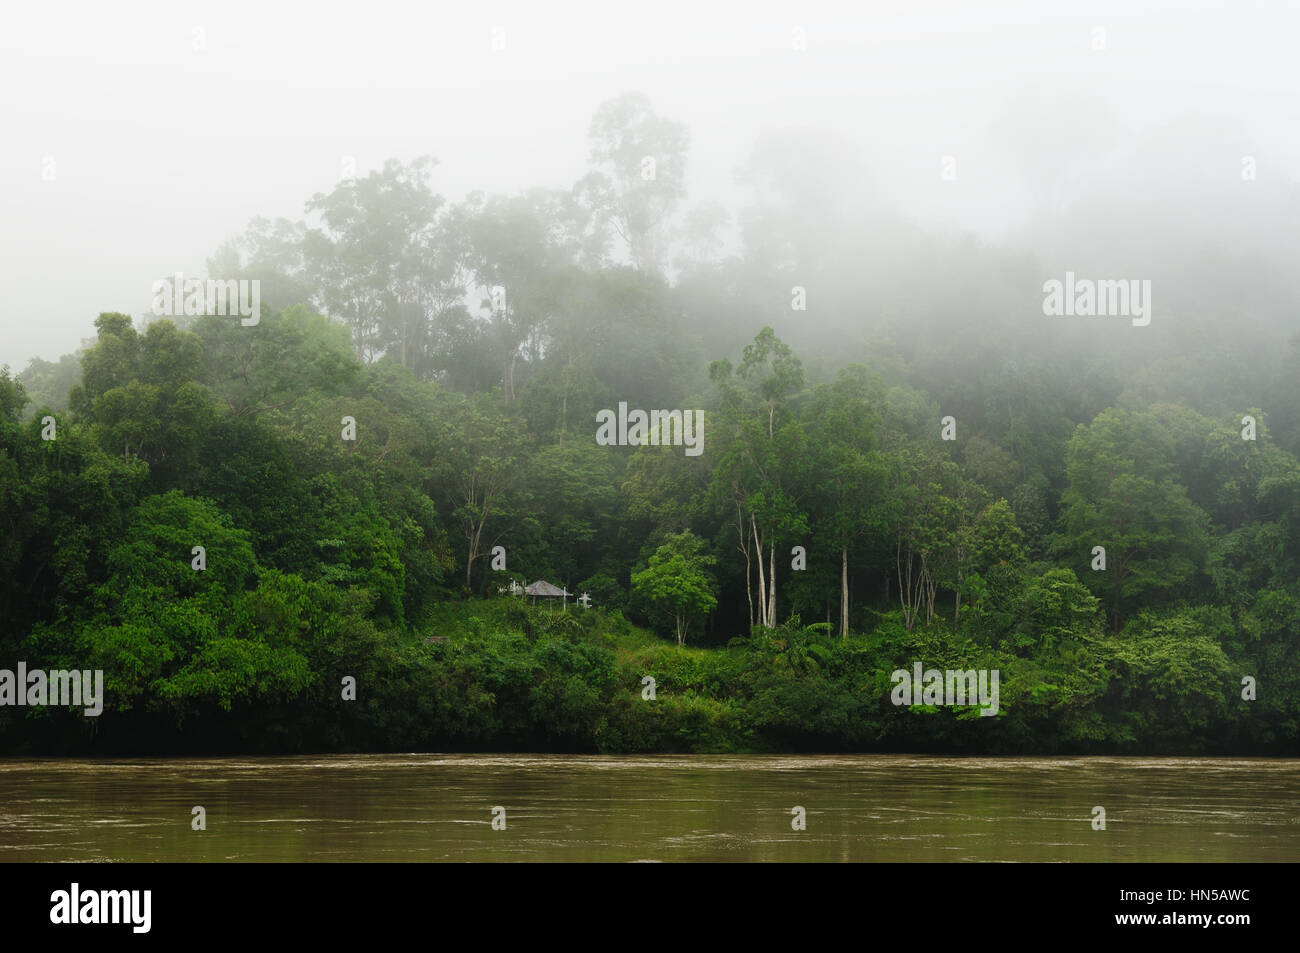 Malerische Aussicht auf den wilden tropischen Dschungel am Fluss Kayan, Ost-Kalimantan, Indonesien-Borneo. Stockfoto